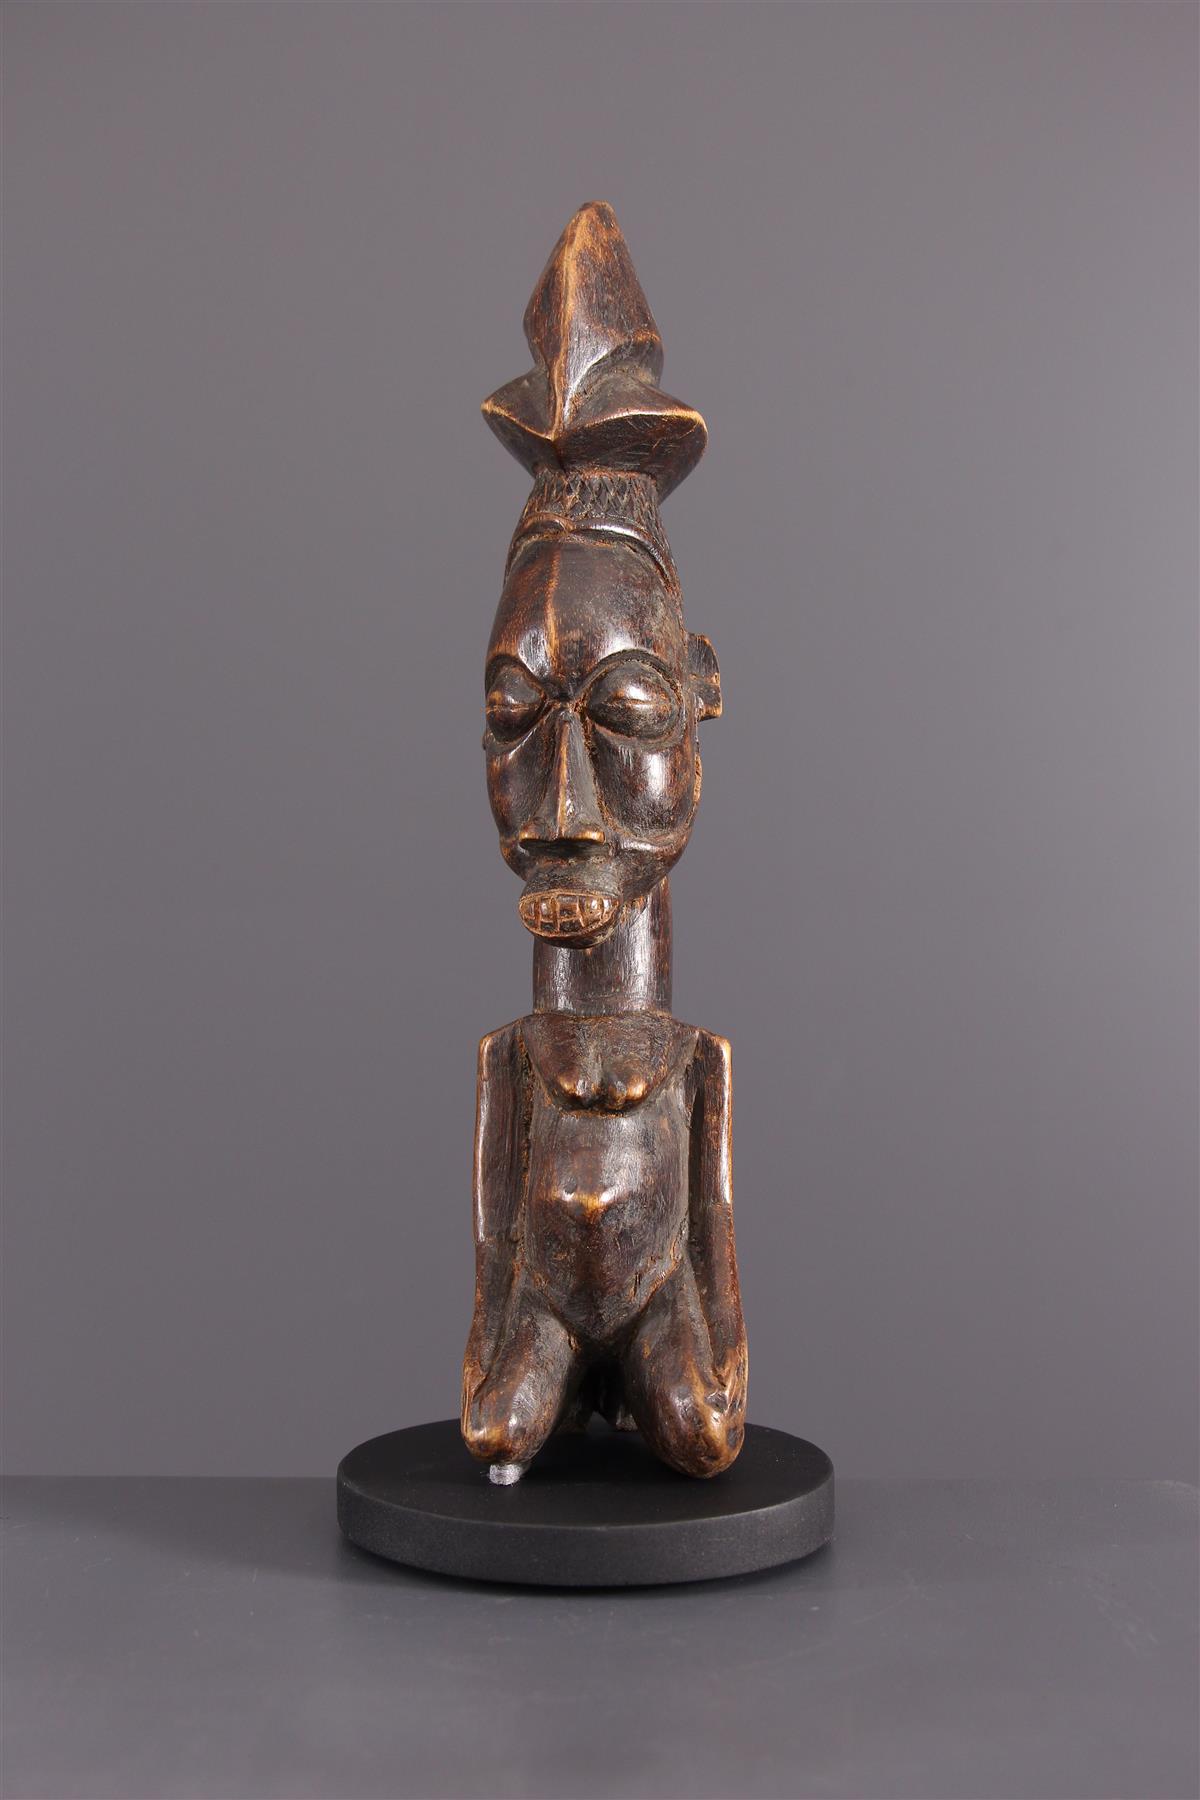 Yaka statuetta - Arte africana